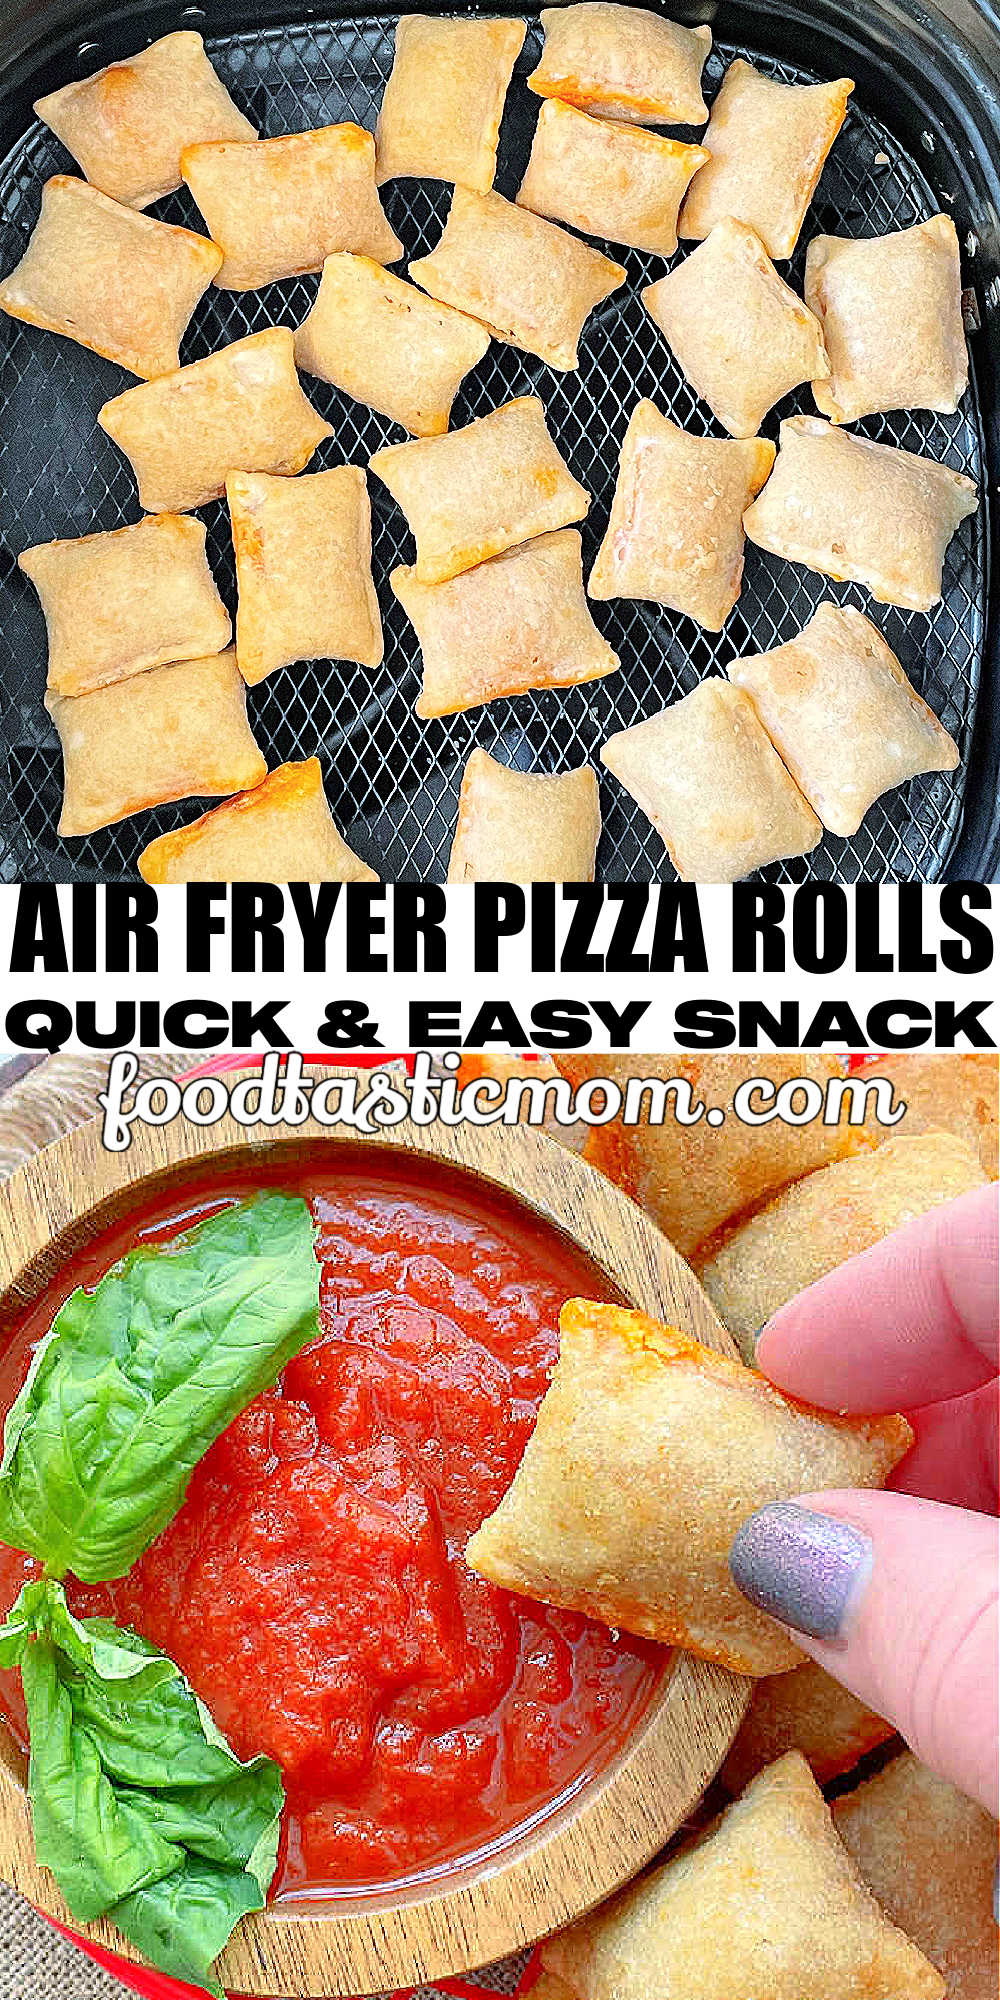 Air Fryer Pizza Rolls | Foodtastic Mom #airfryerrecipes #pizzarolls #pizzarollsinairfryer via @foodtasticmom